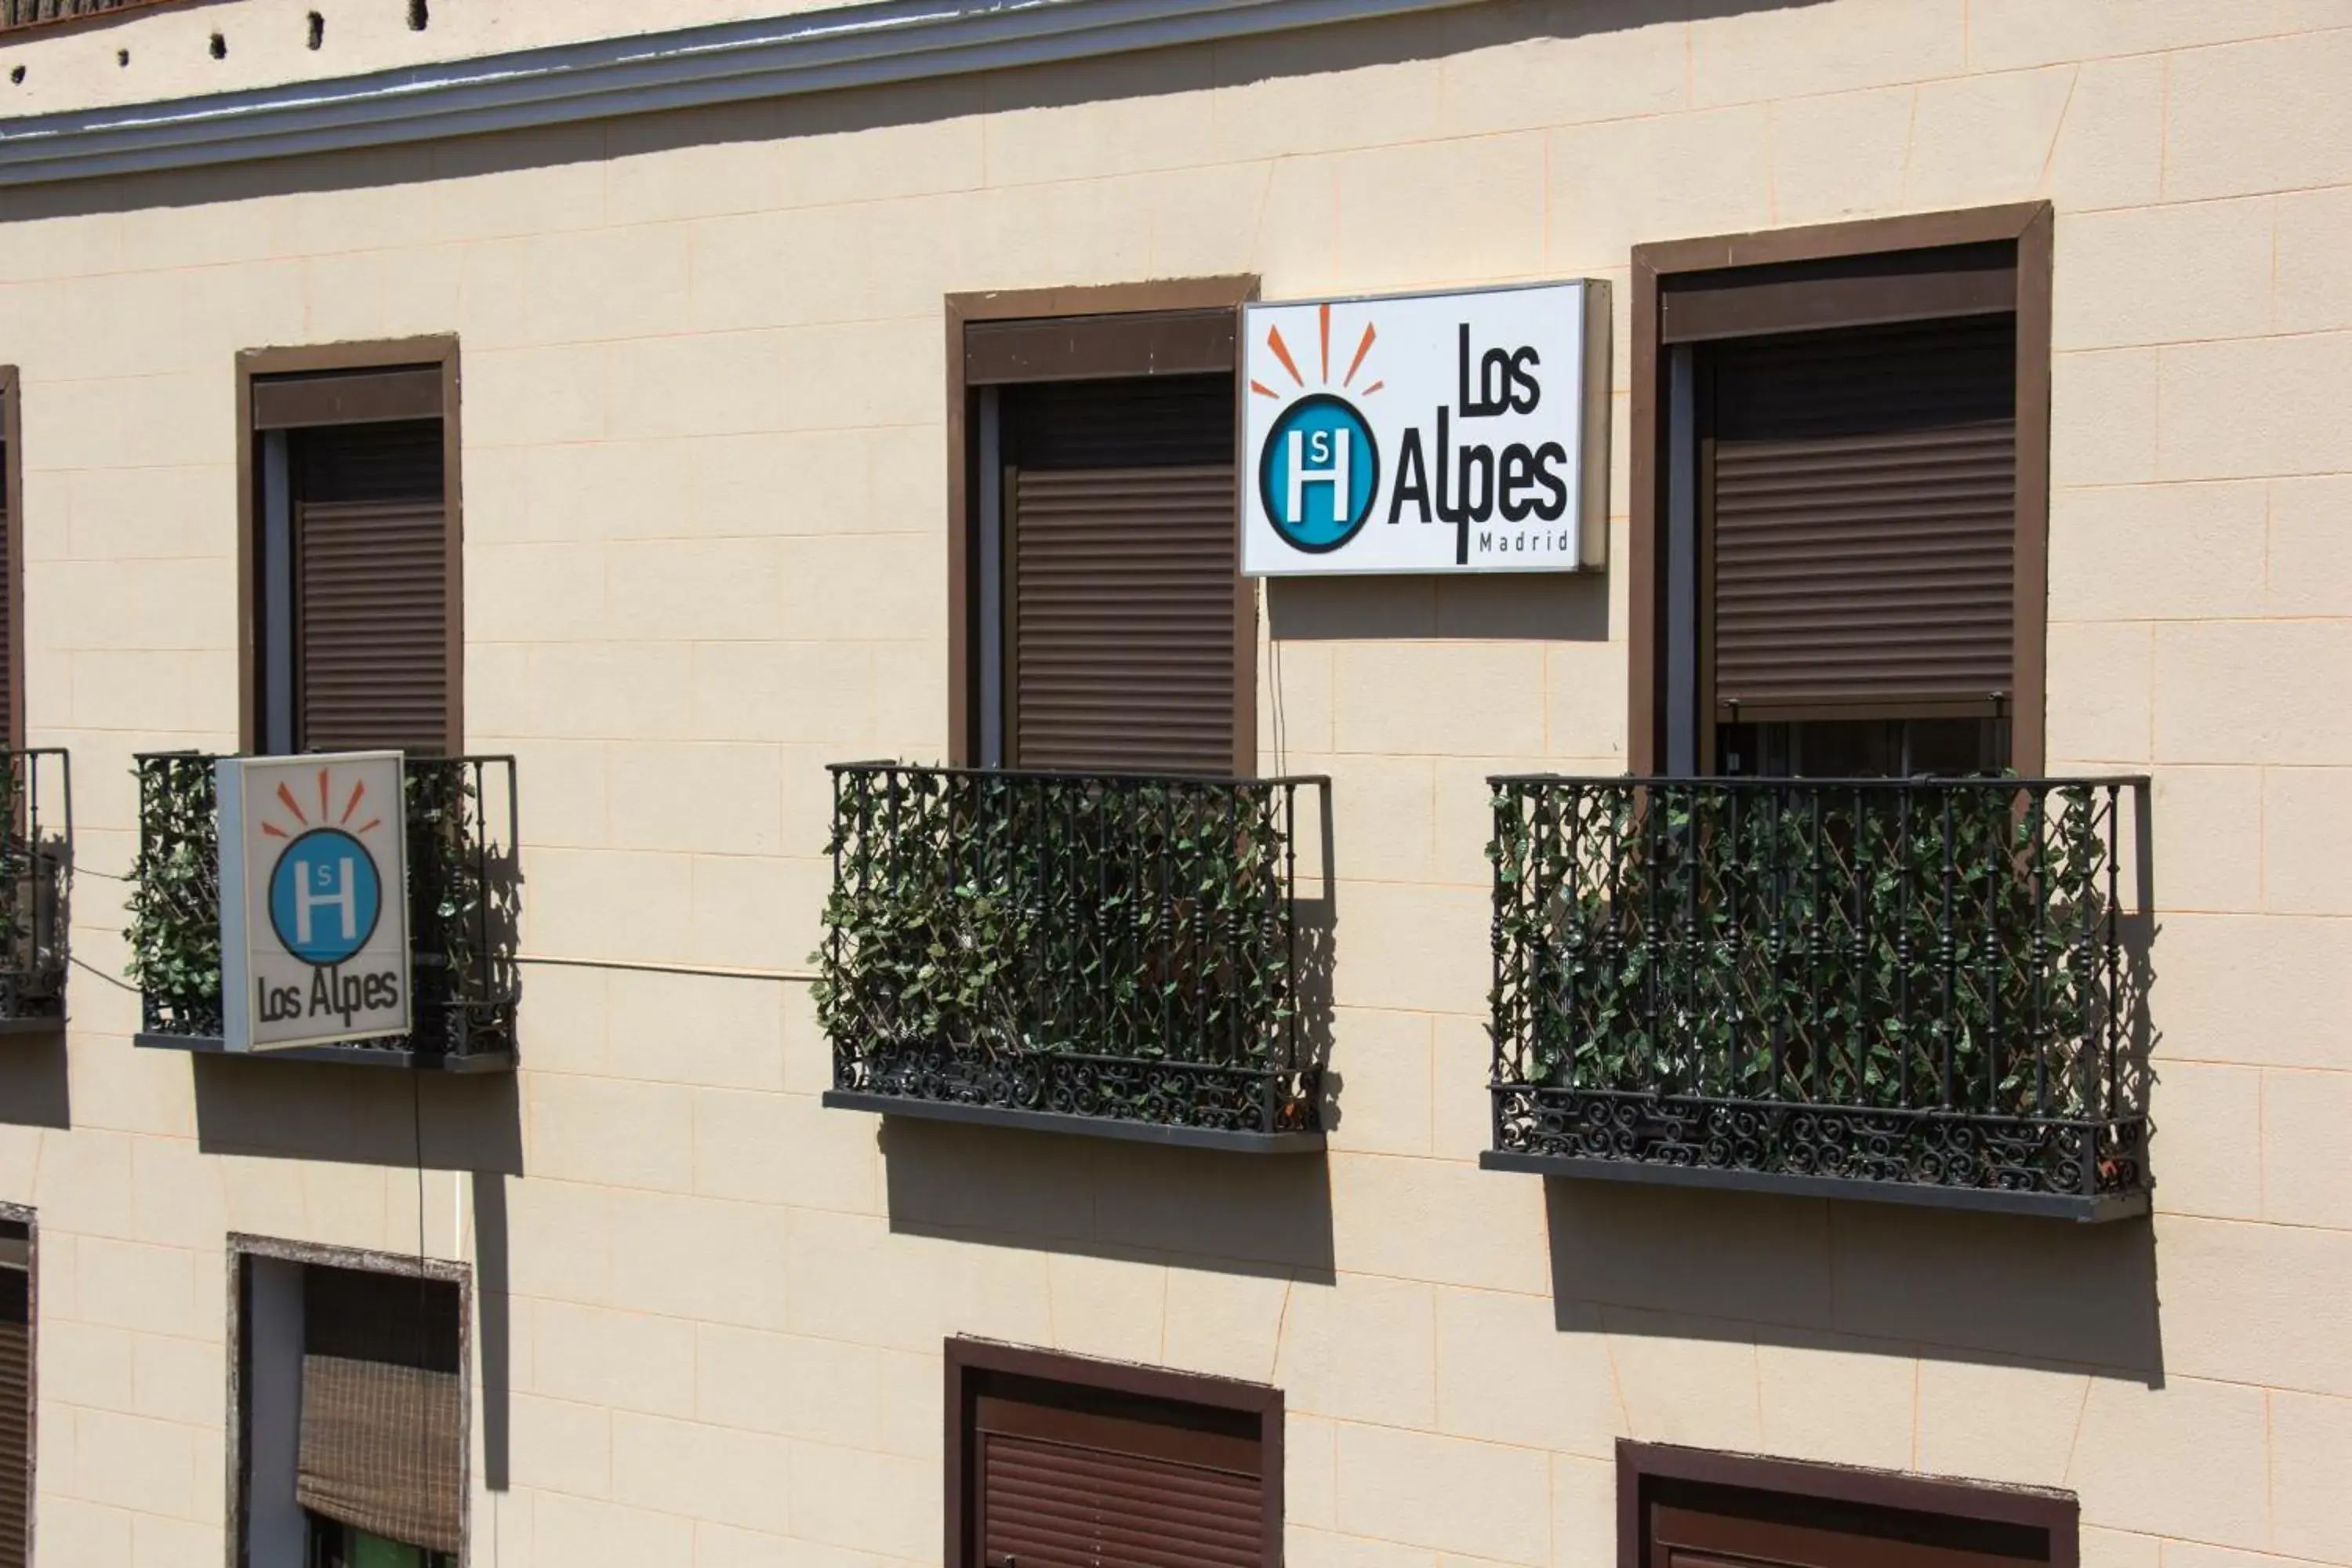 Property logo or sign in Hostal Los Alpes